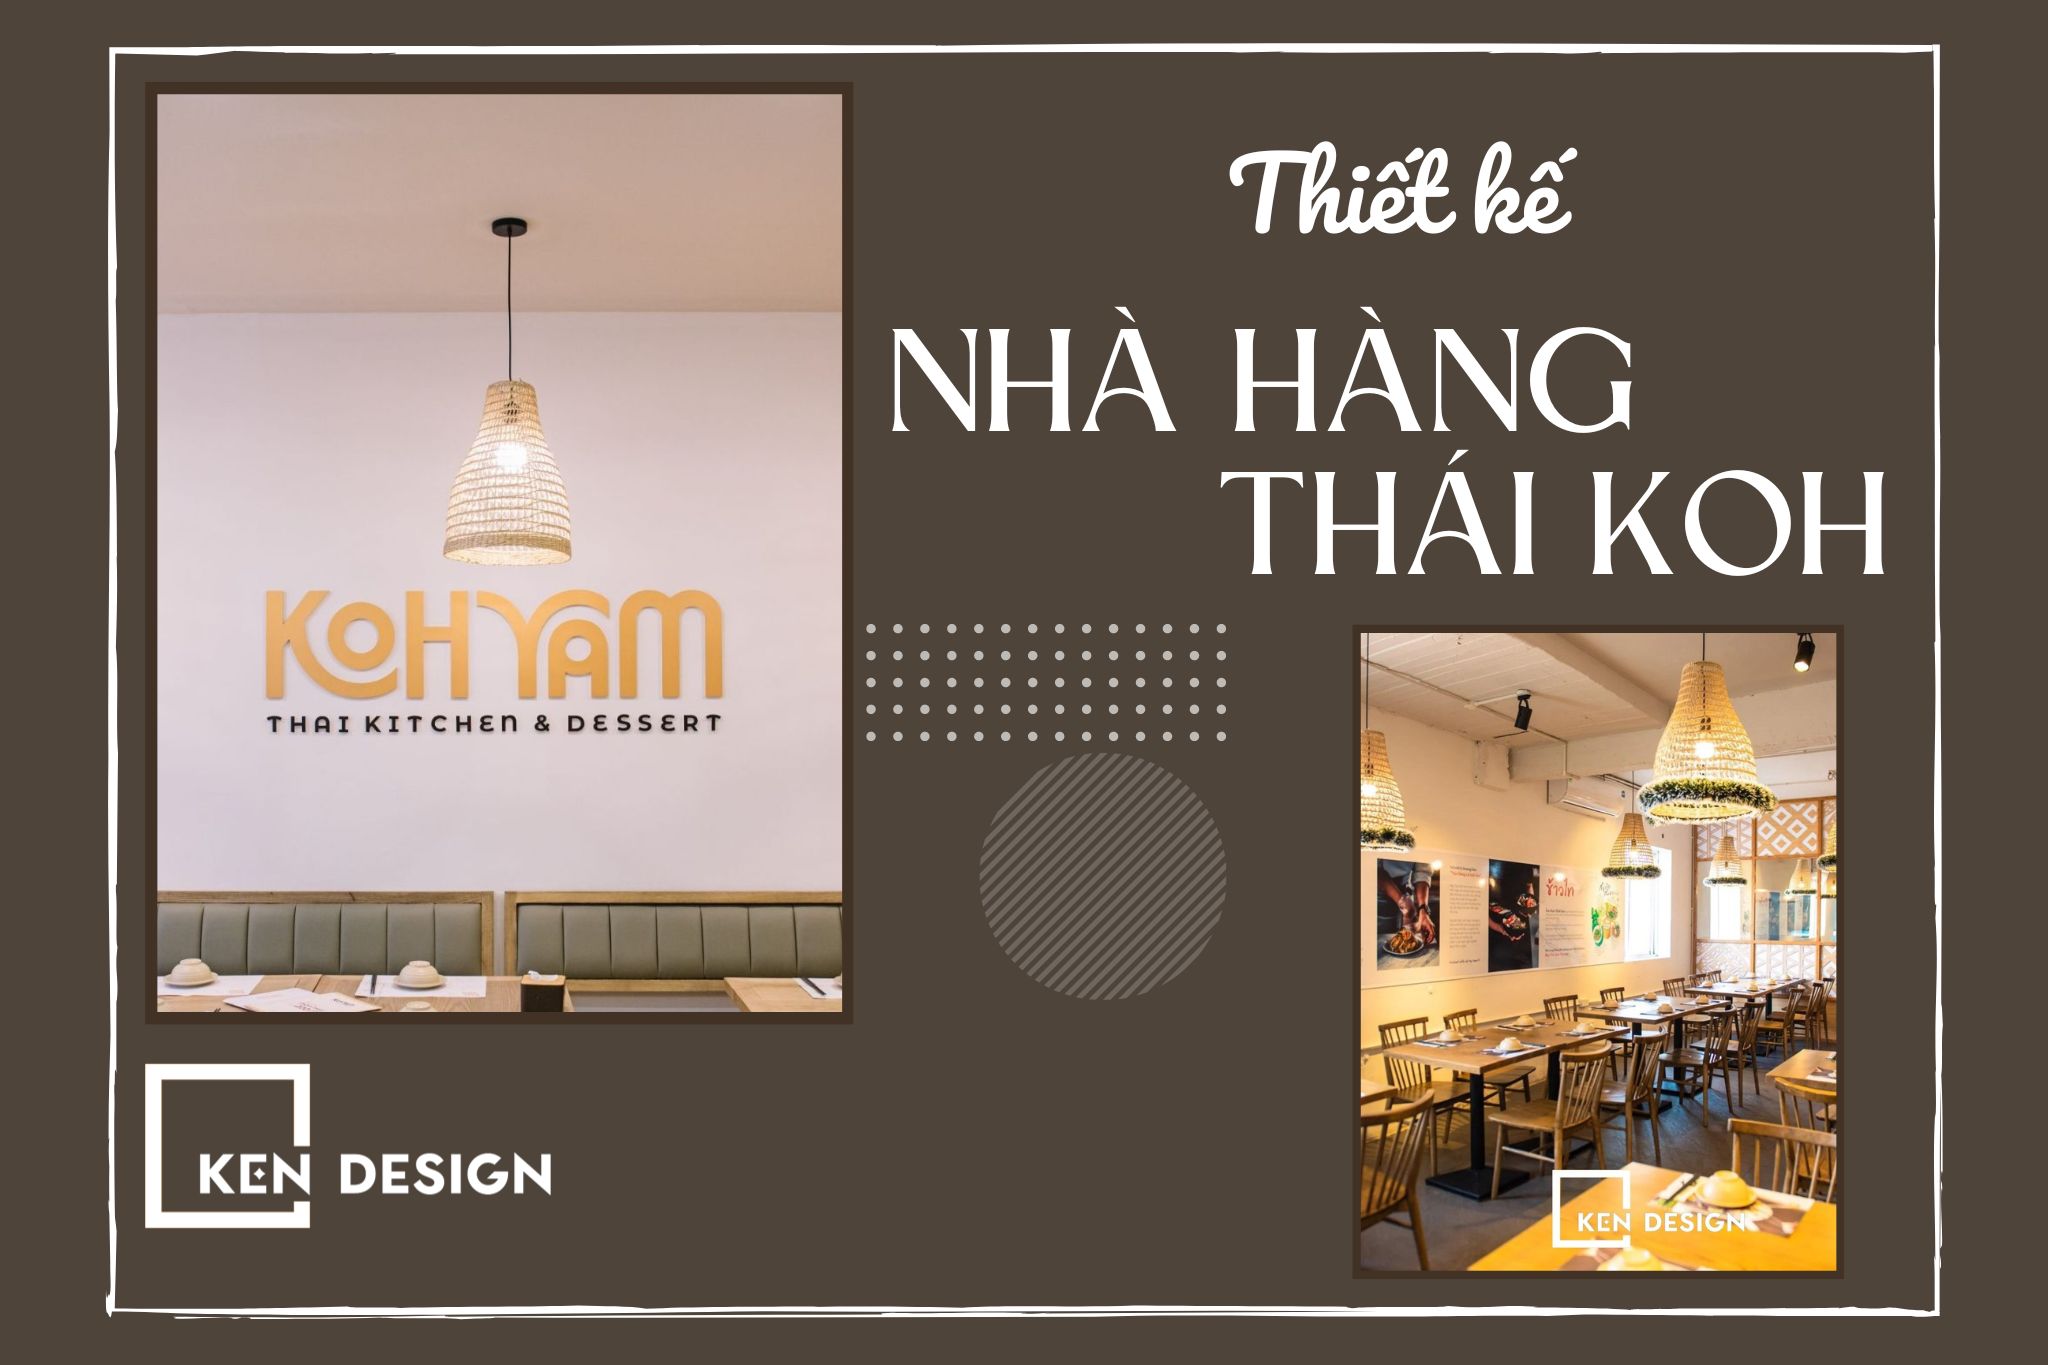 Phong cách thiết kế nhà hàng Thái Koh - Độc đáo và sáng tạo bậc nhất